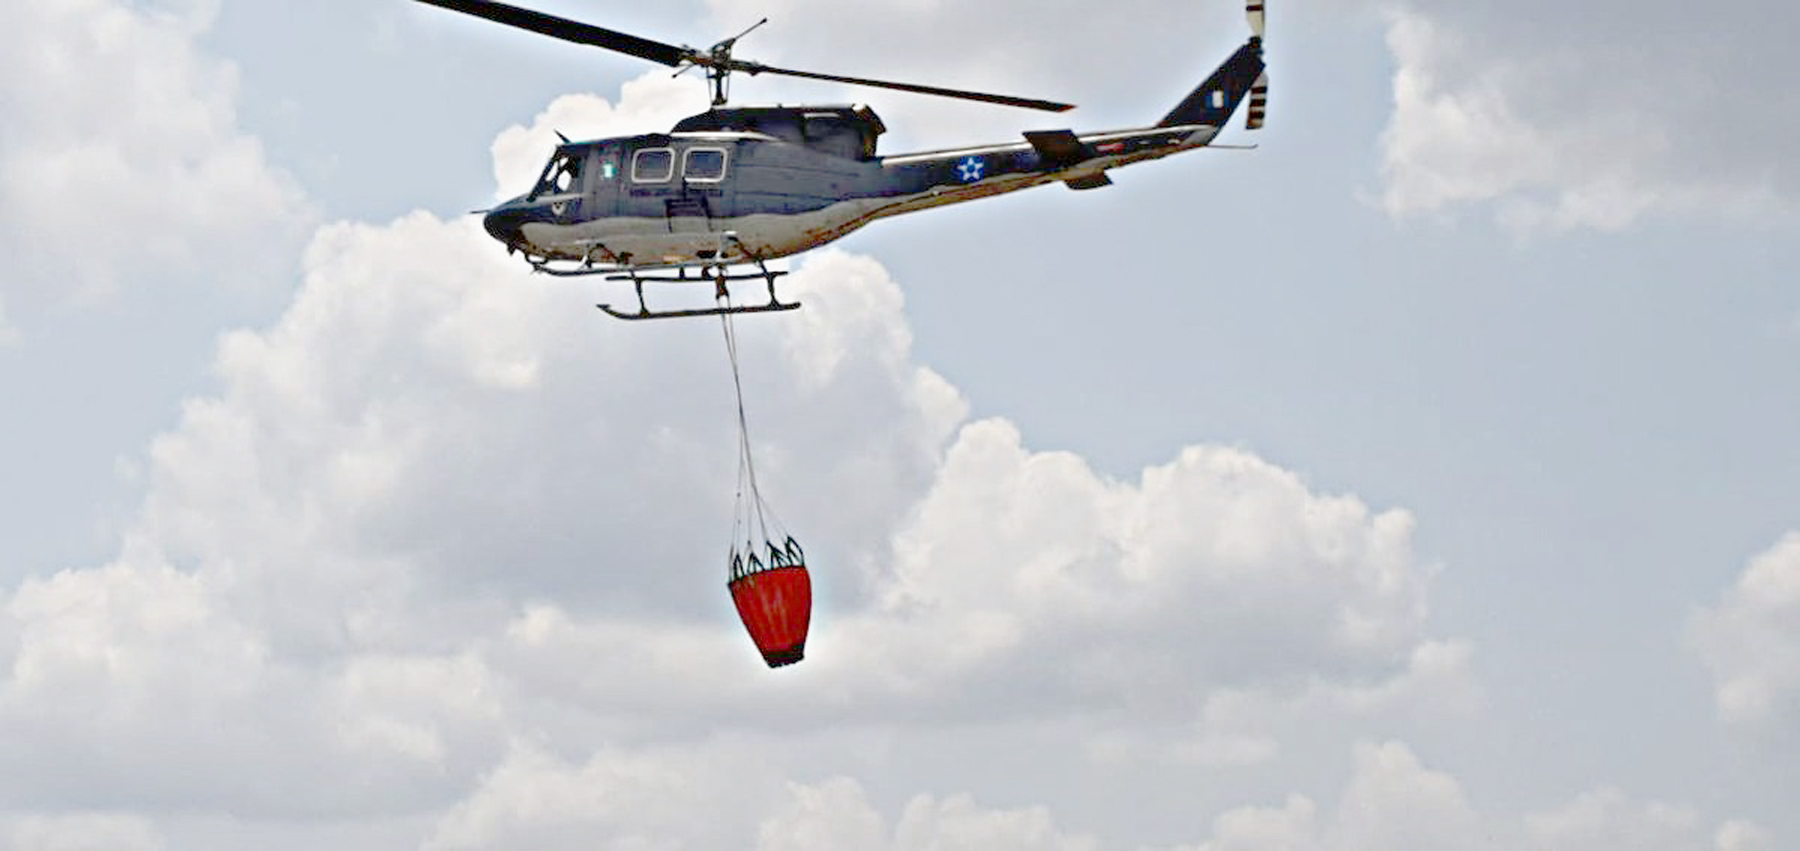 El Helicóptero Bell 212 cuenta con el sistema bambi bucket, con una capacidad de 400 galones de agua. (Foto Prensa Libre: Dony Stewart)